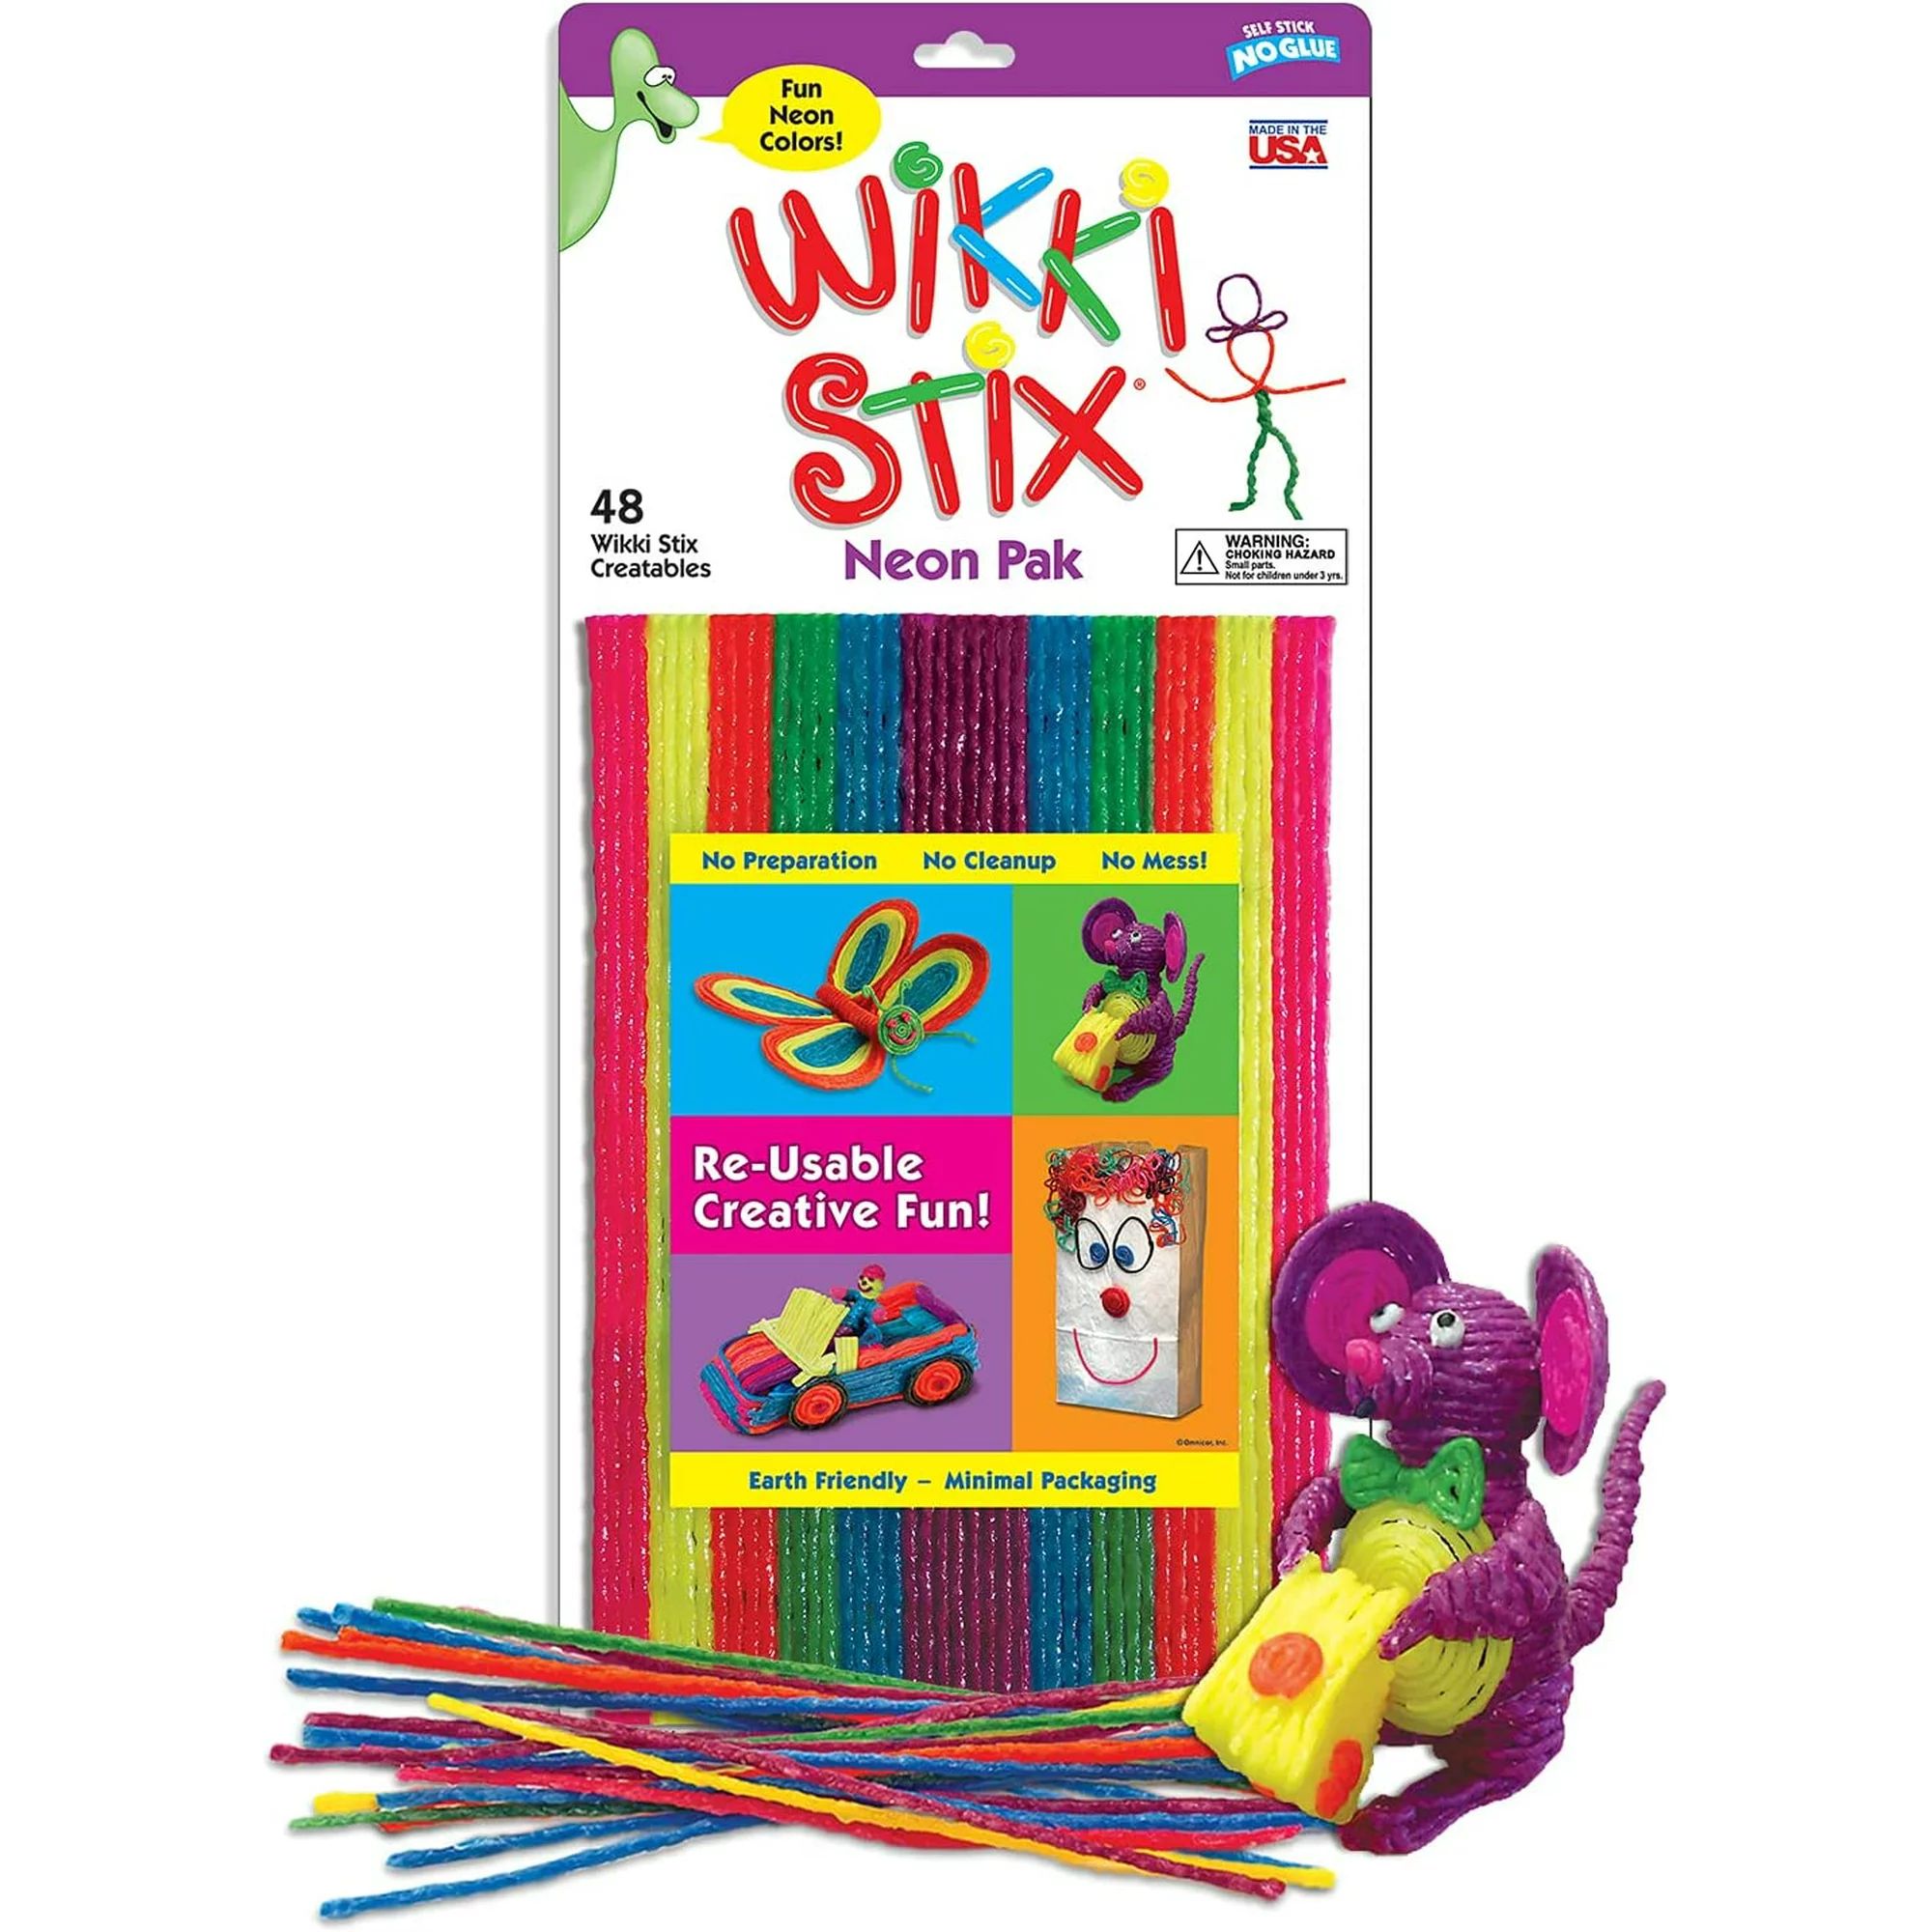 Wikki Stix Neon Pak with 48 Wikki Stix in Bright Neon Colors | Walmart (US)